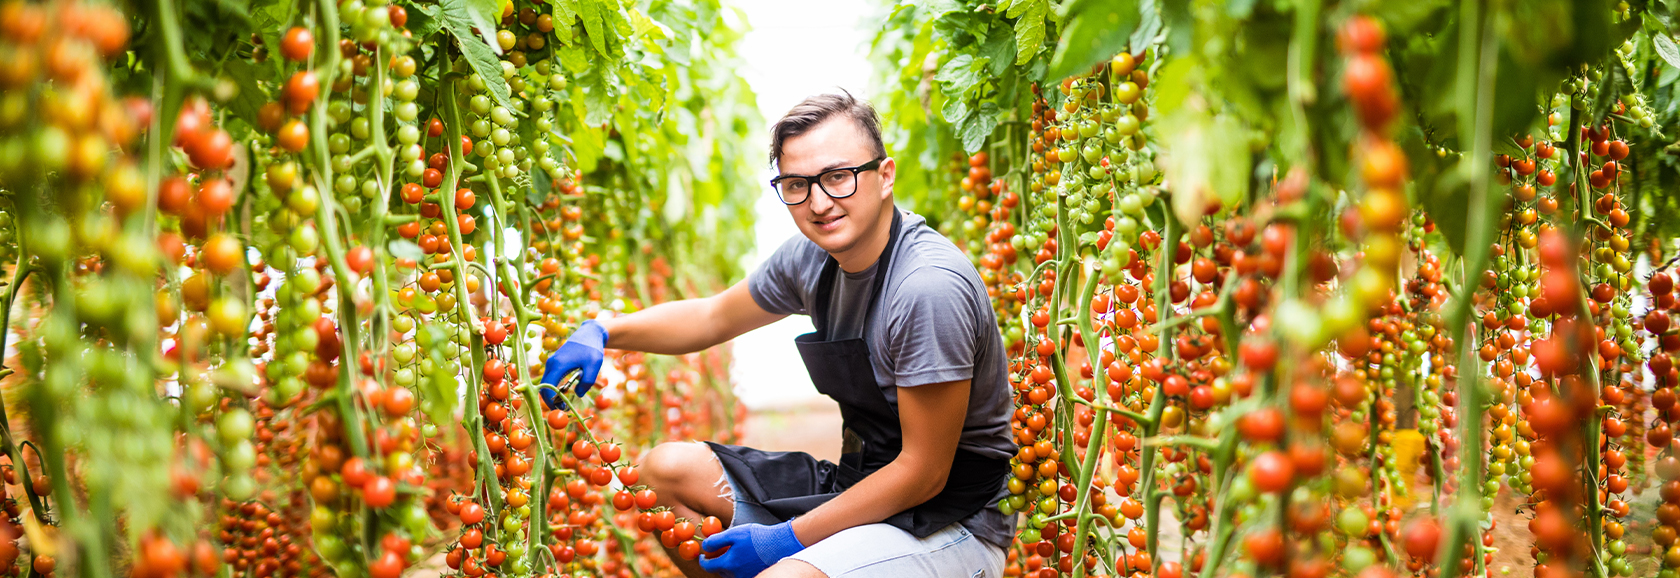 Tomatoes Employee